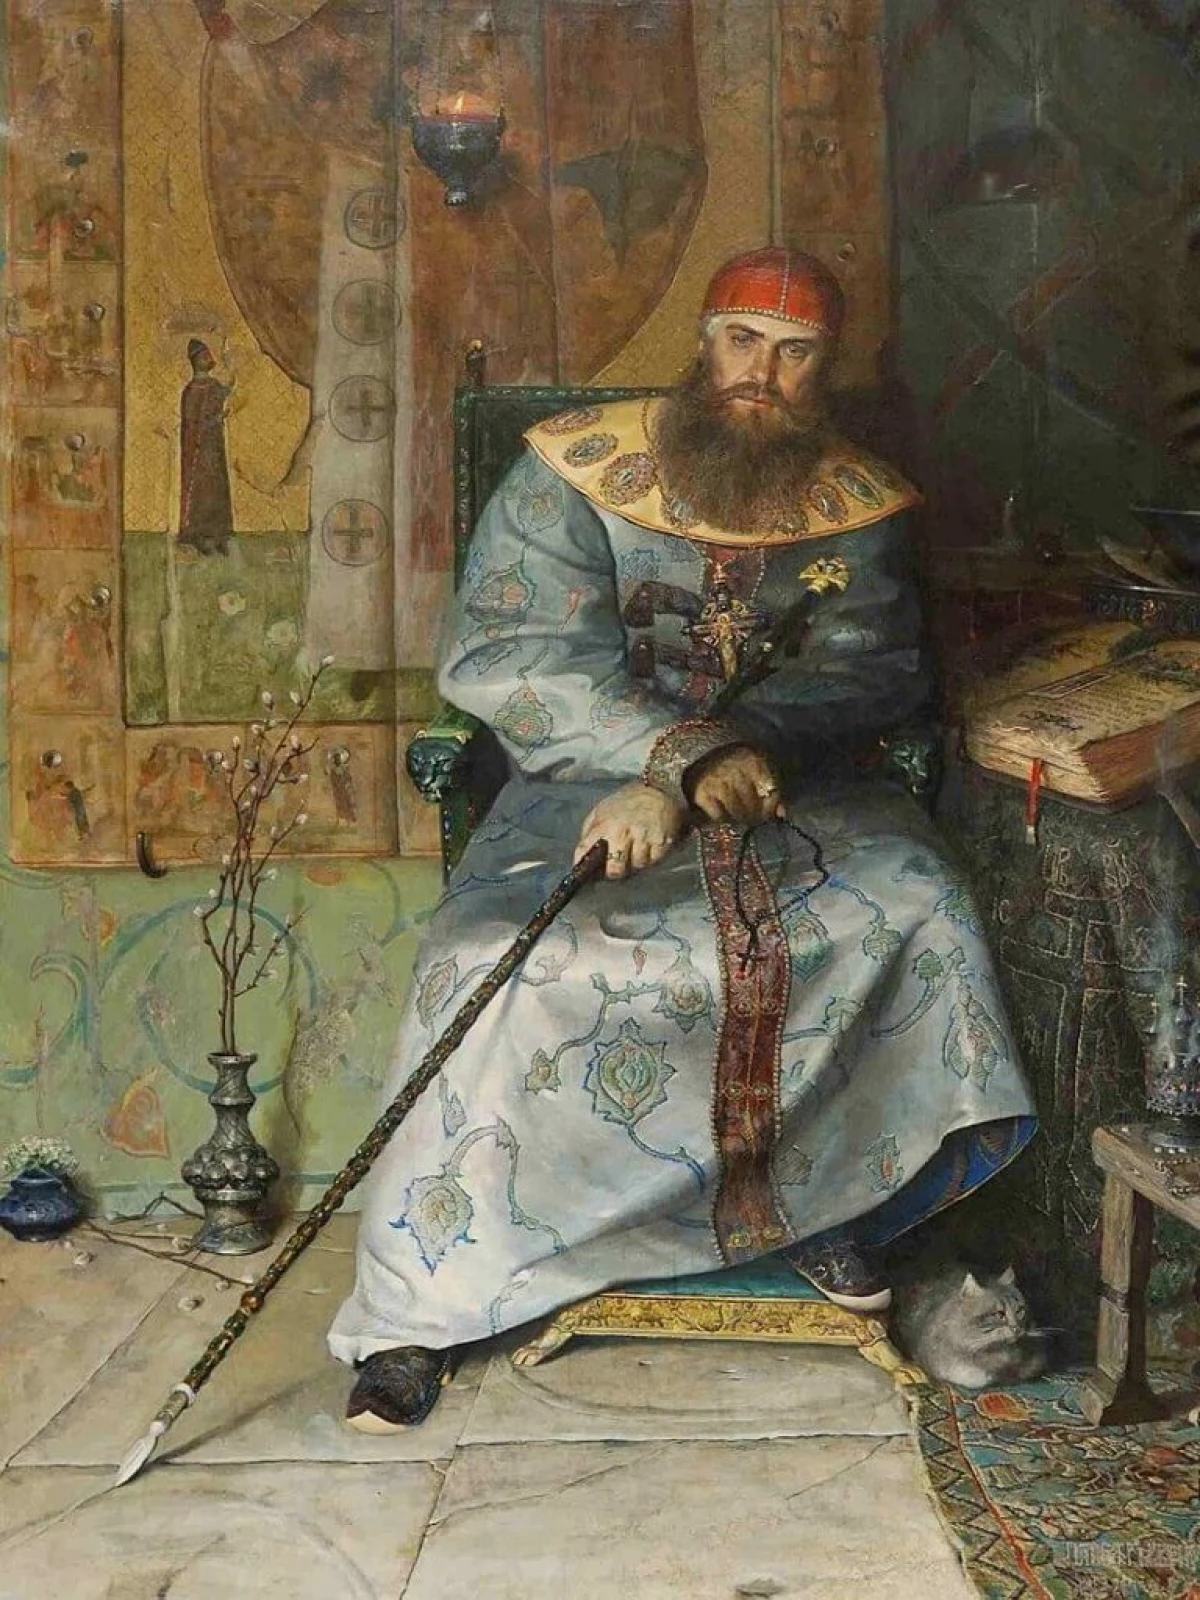 Bakit hindi matagumpay ang reporma sa pera ng Tsar Alexei Romanov? 13844_1